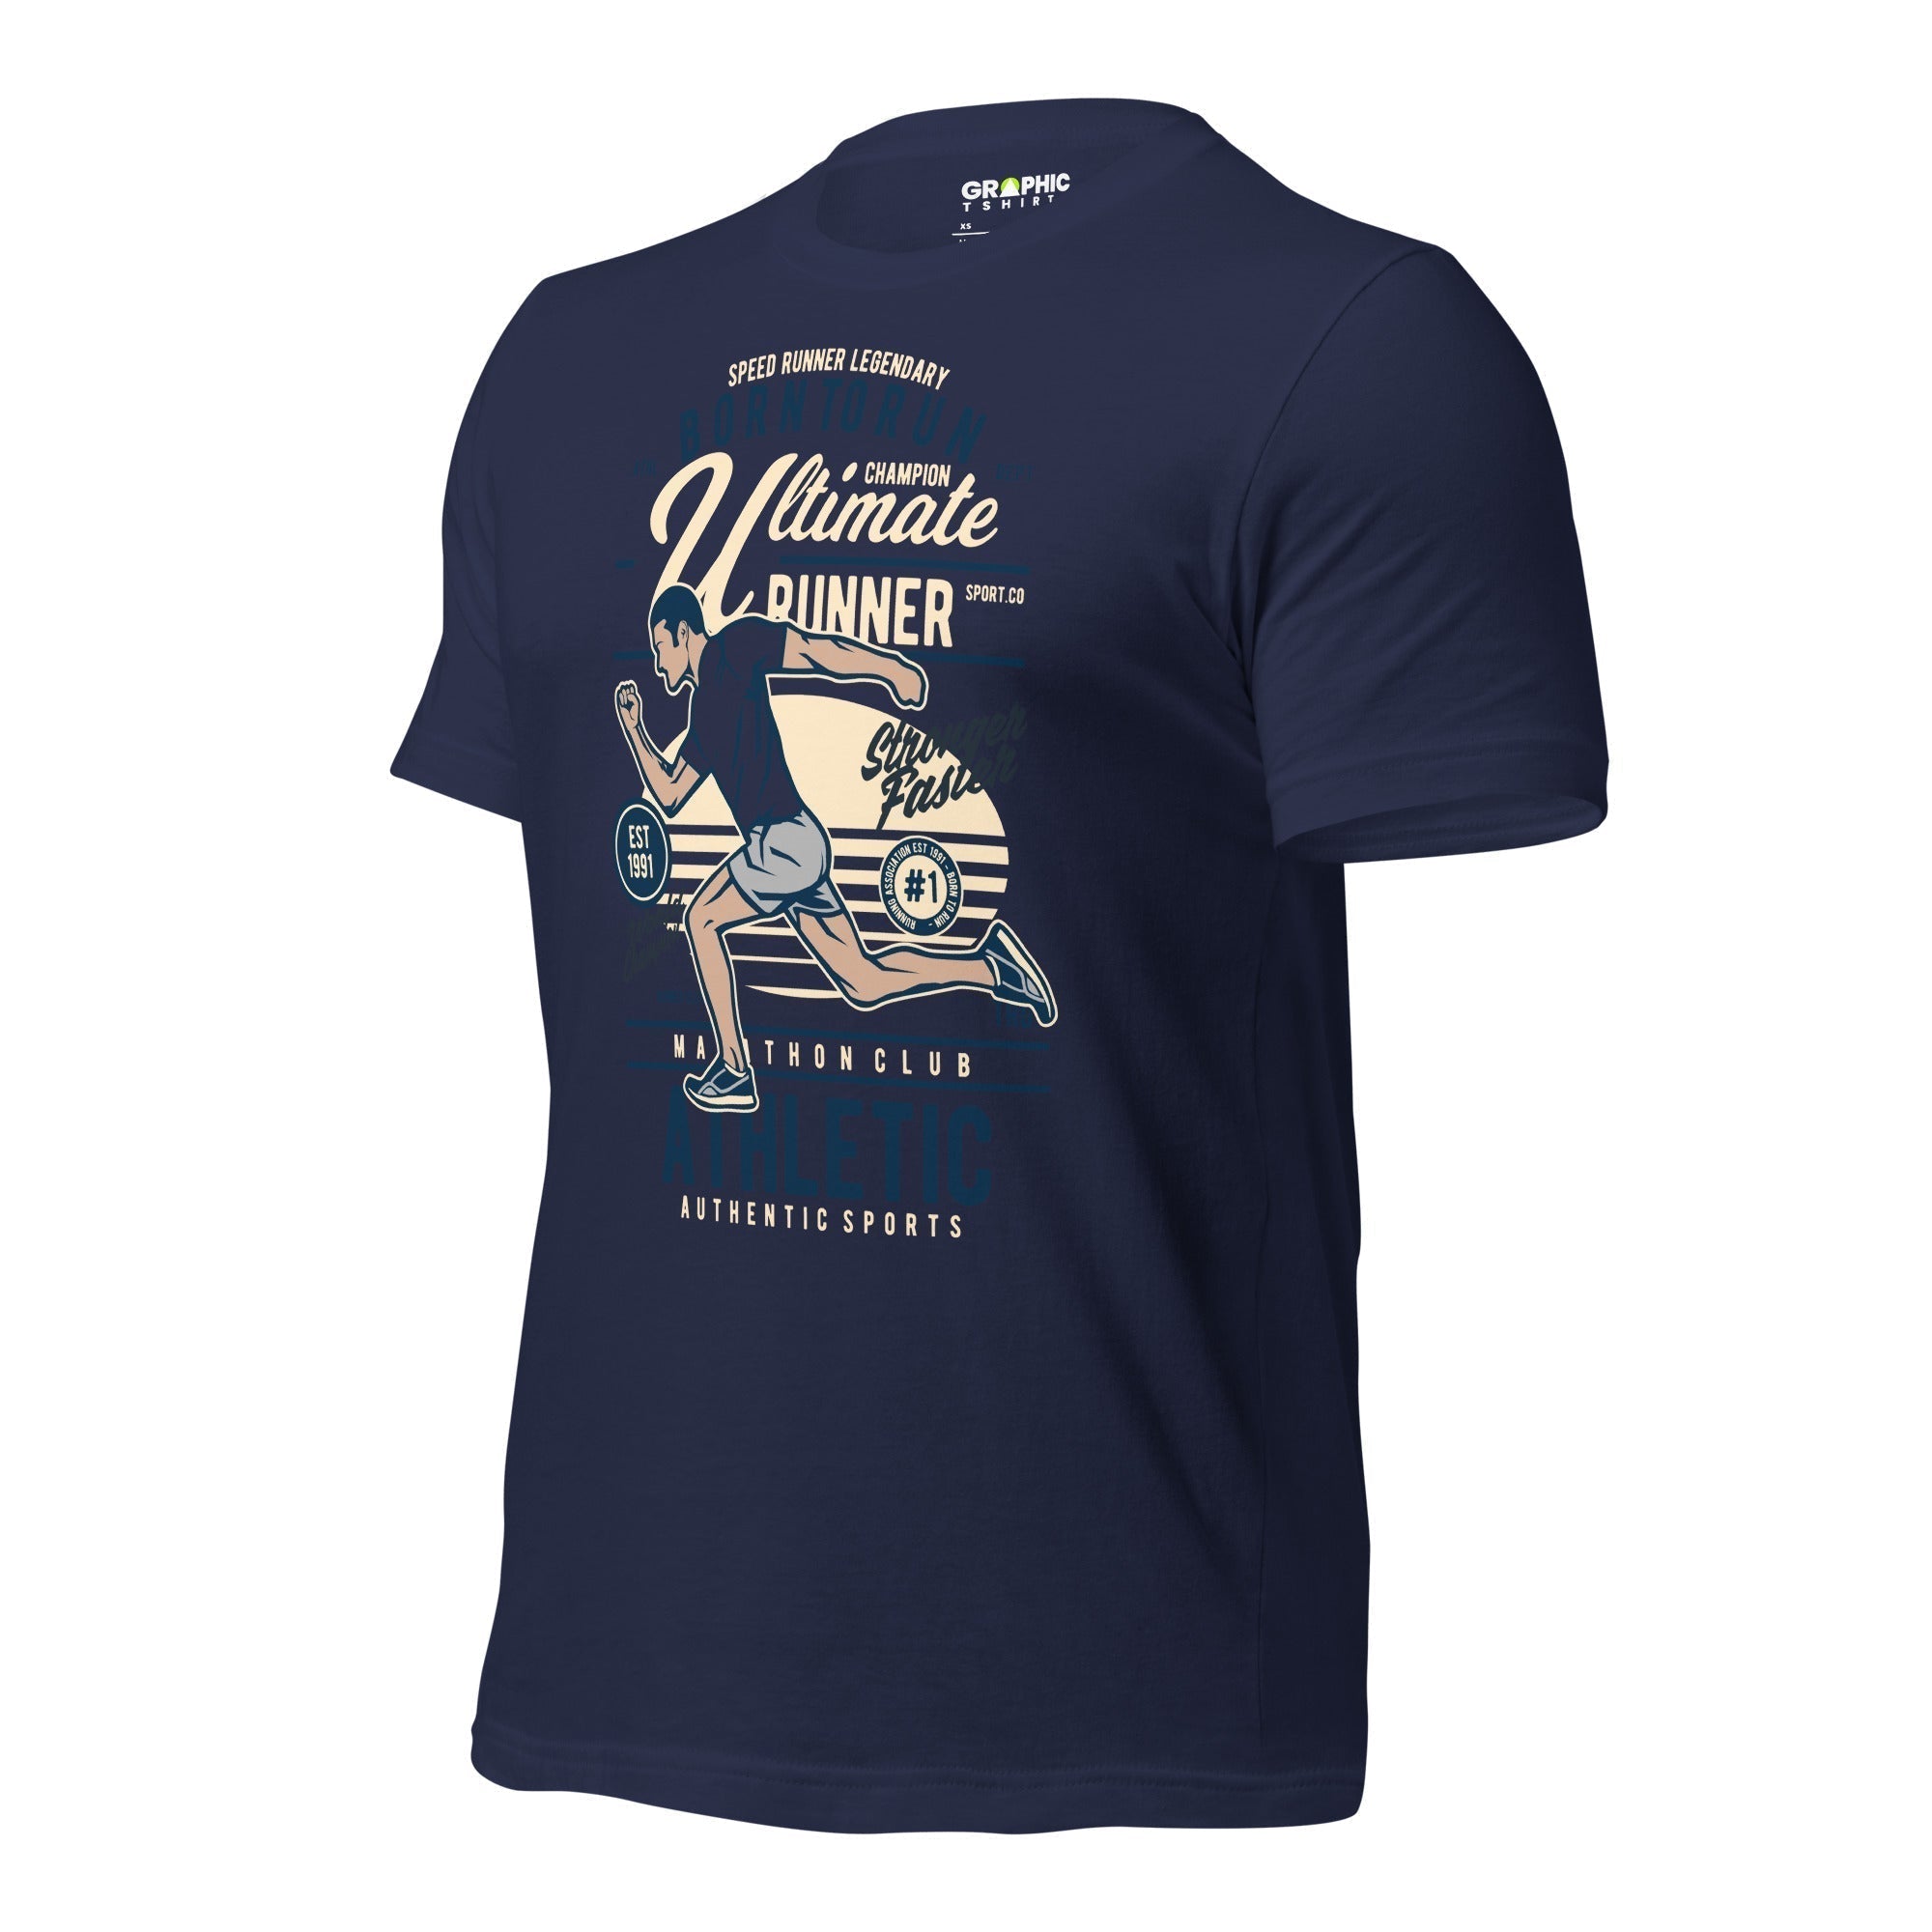 Unisex Staple T-Shirt - Born To Run Ultimate Runner Speed Runner Legendary World Champion Stronger Faster Est. 1991 Athletic - GRAPHIC T-SHIRTS